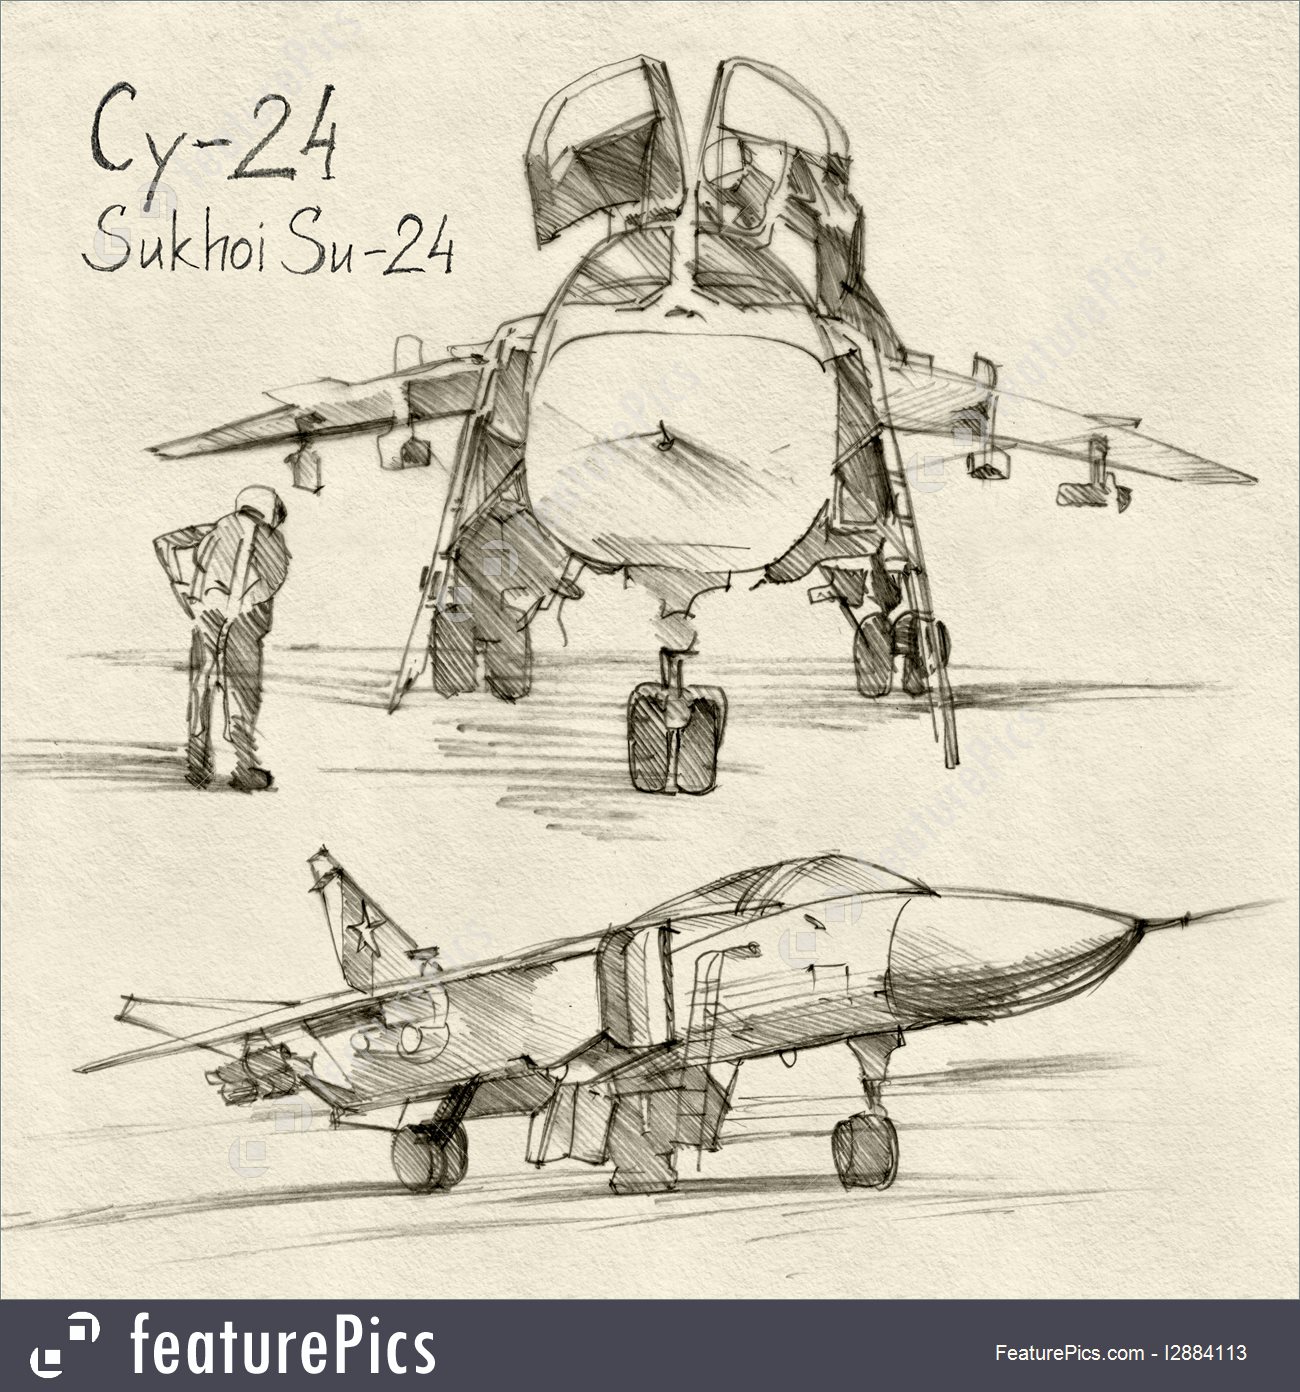 Sukhoi Su-24 #10